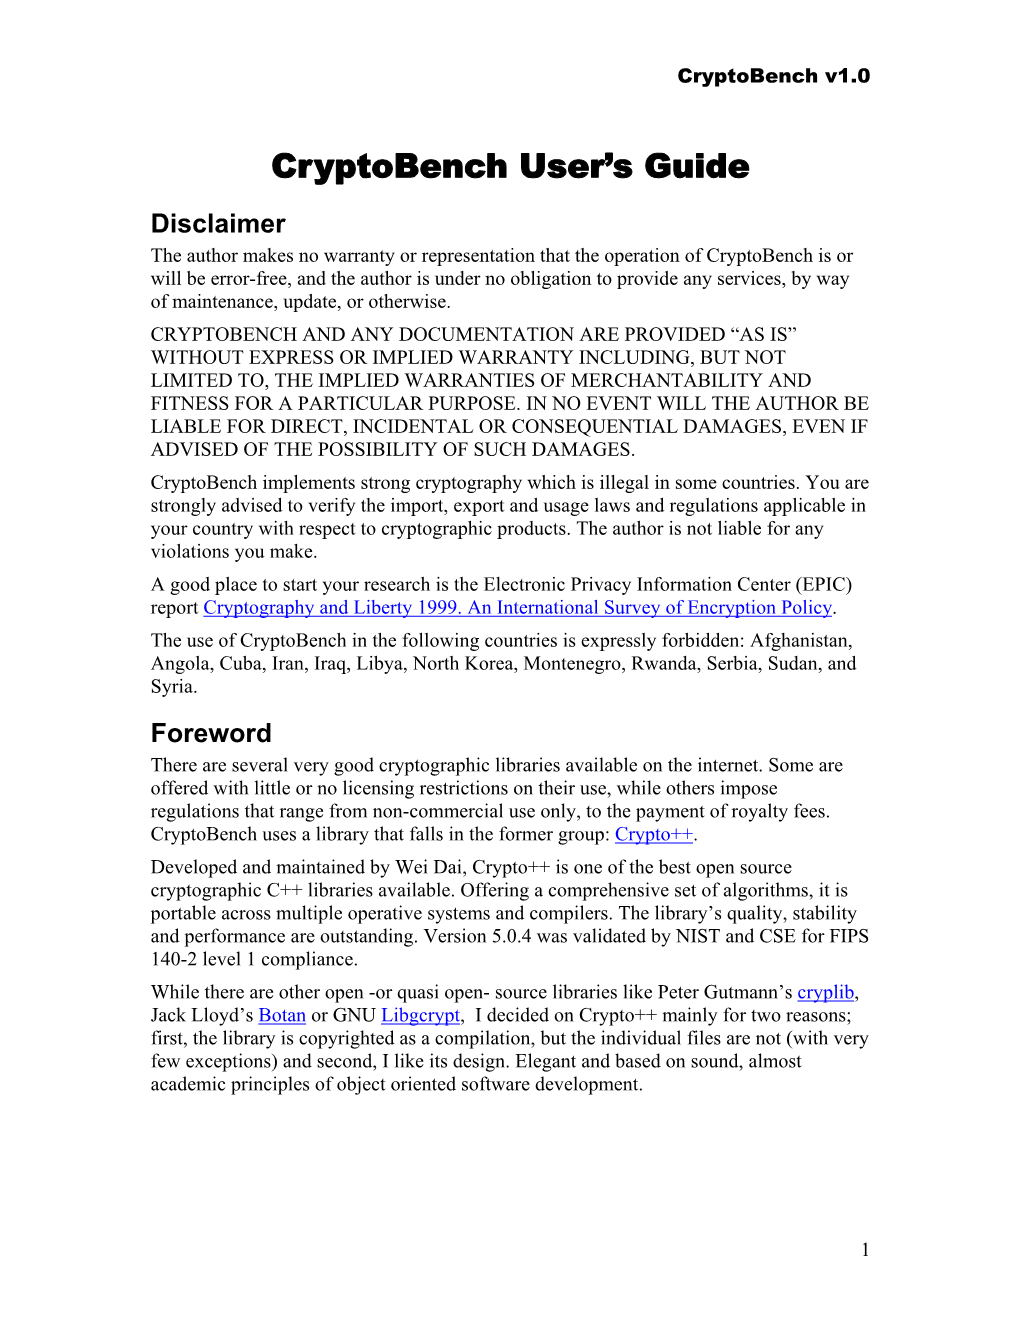 Cryptobench User's Guide